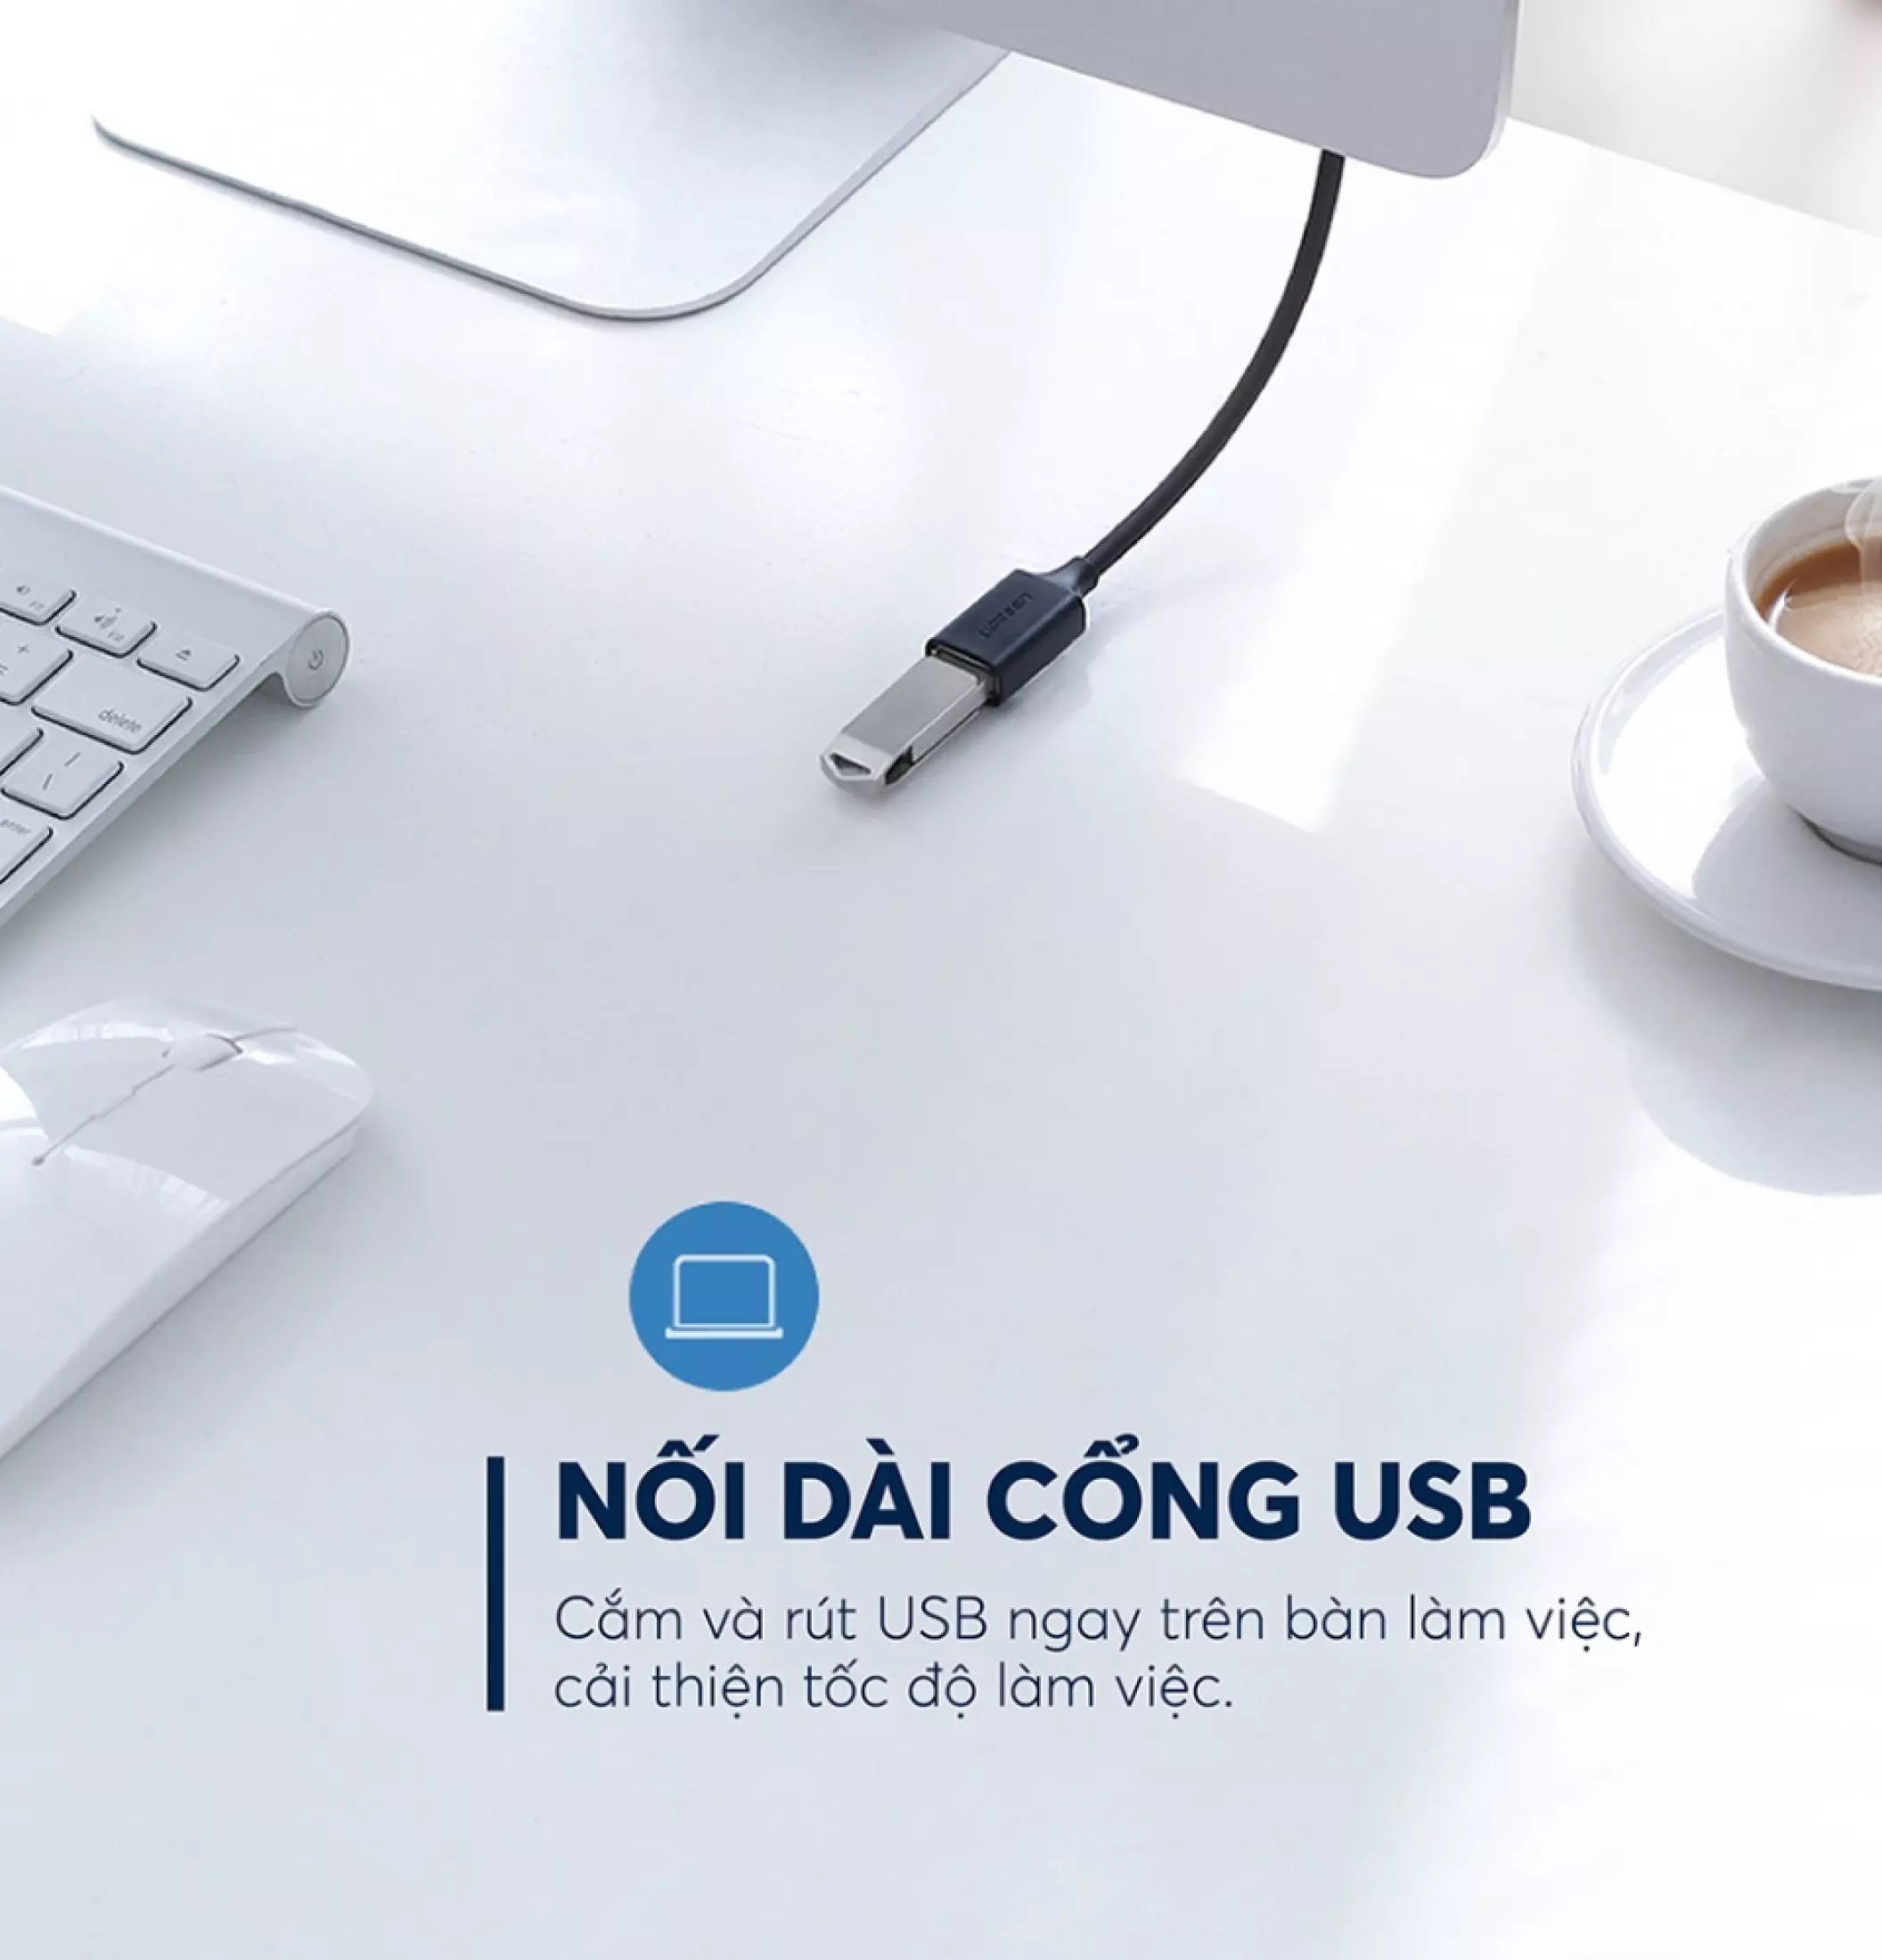 Dây nối dài USB 2.0 (1 đầu đực, 1 đầu cái) dài 2m UGREEN US103 10316 - Hàng Chính Hãng